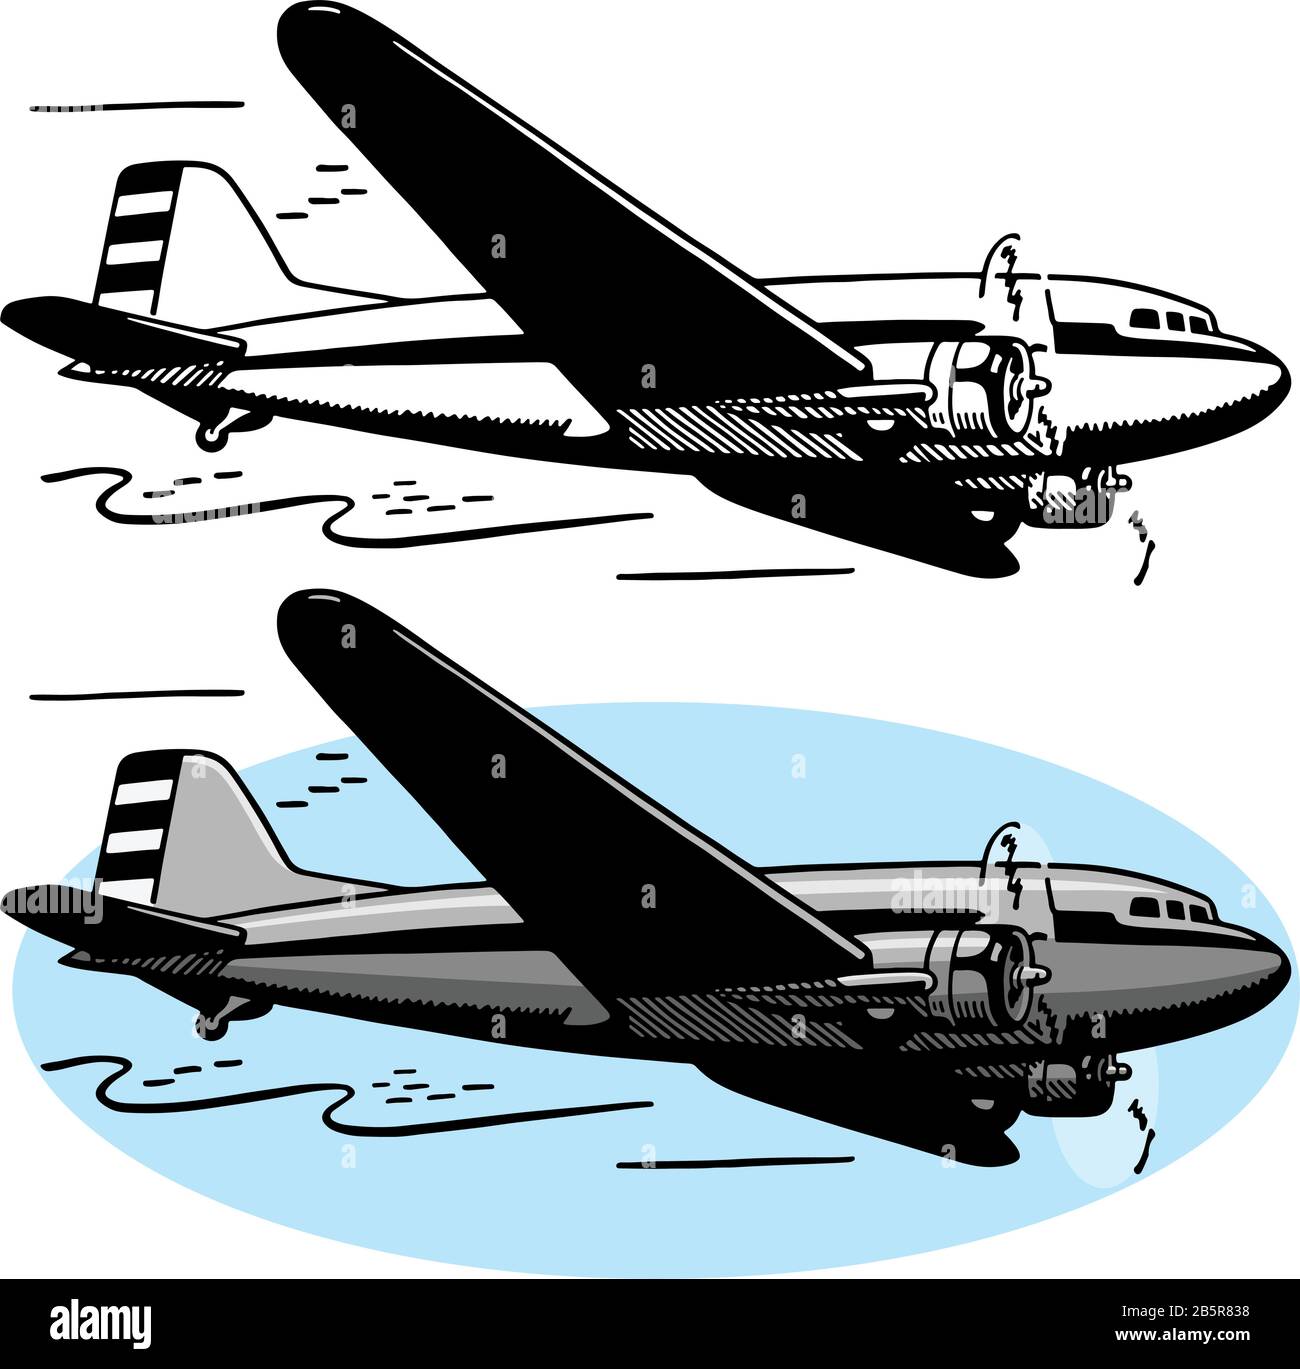 Eine Zeichnung eines Transportflugzeugs der C-47 Douglas aus der Zeit des zweiten Weltkriegs. Stock Vektor